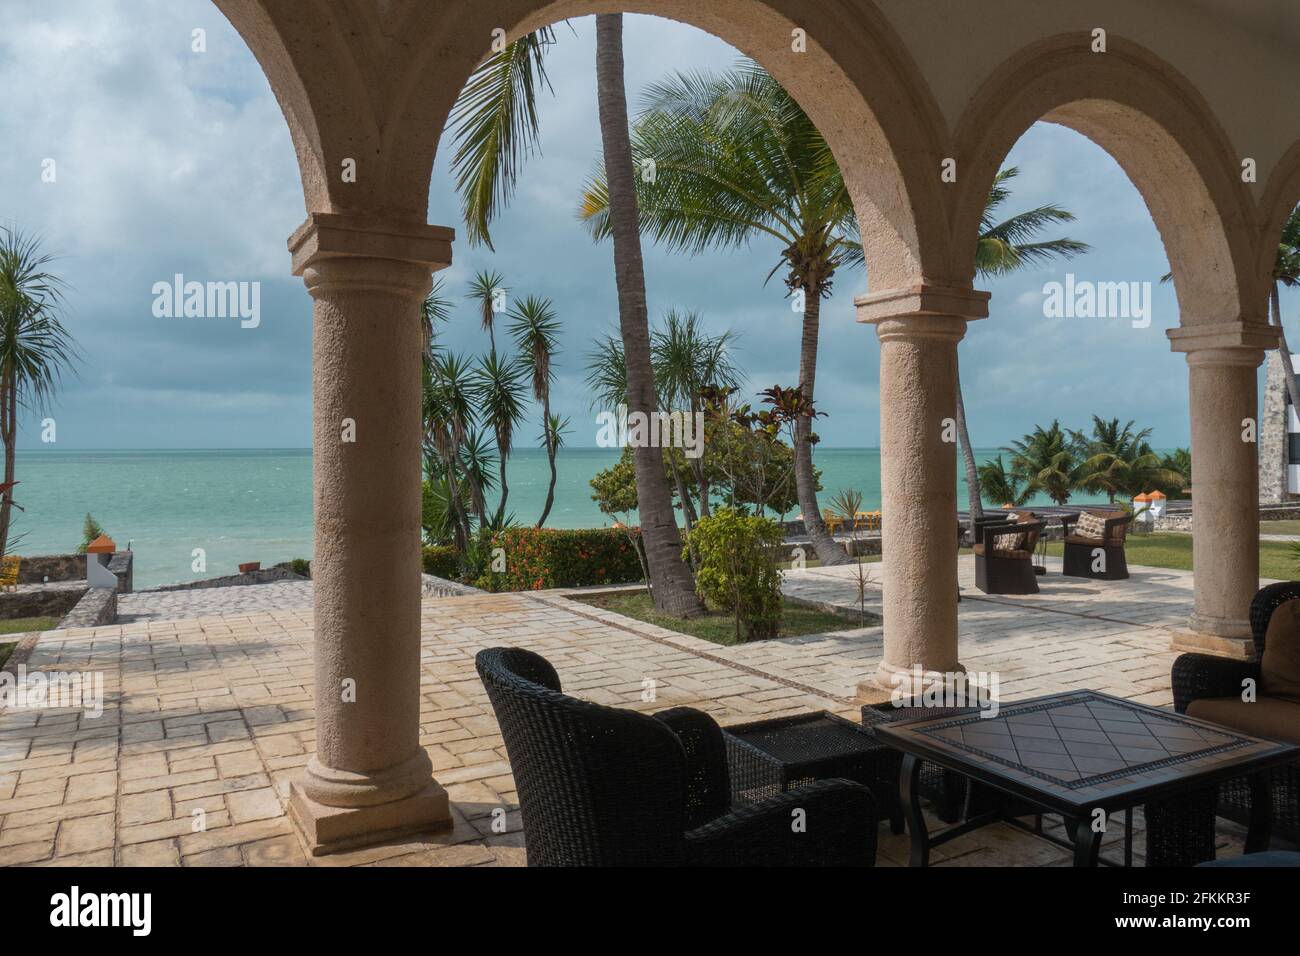 El Hotel Tucán Siho-Playa en Champotón se construyó en lo que fue una de las haciendas henequeneras de Campeche, localizada junto al mar. Stock Photo